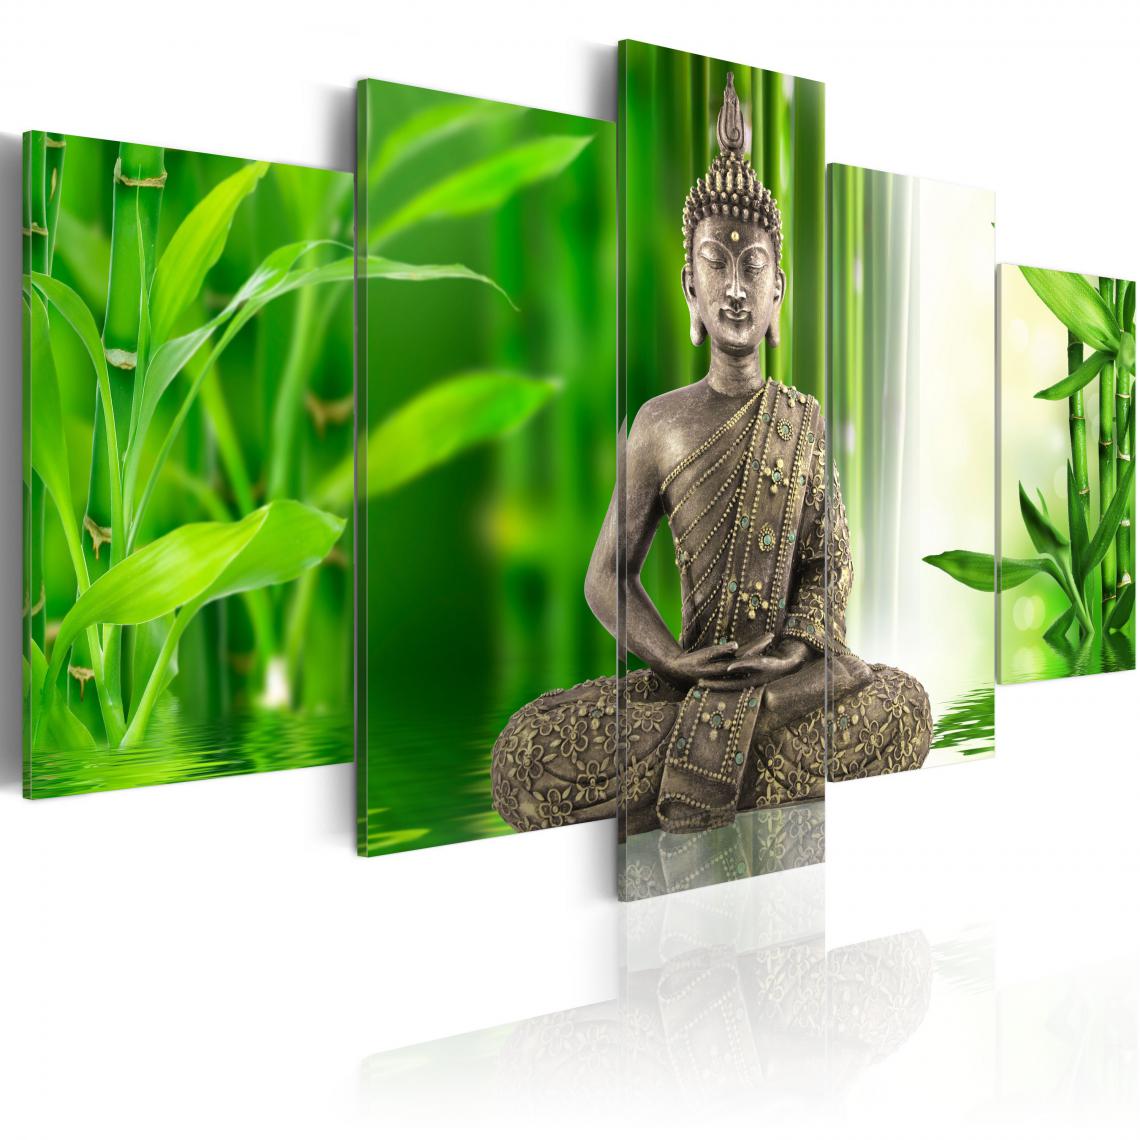 Decoshop26 - Tableau sur toile en 5 panneaux décoration murale image imprimée cadre en bois à suspendre Bouddha méditant 200x100 cm 11_0009352 - Tableaux, peintures